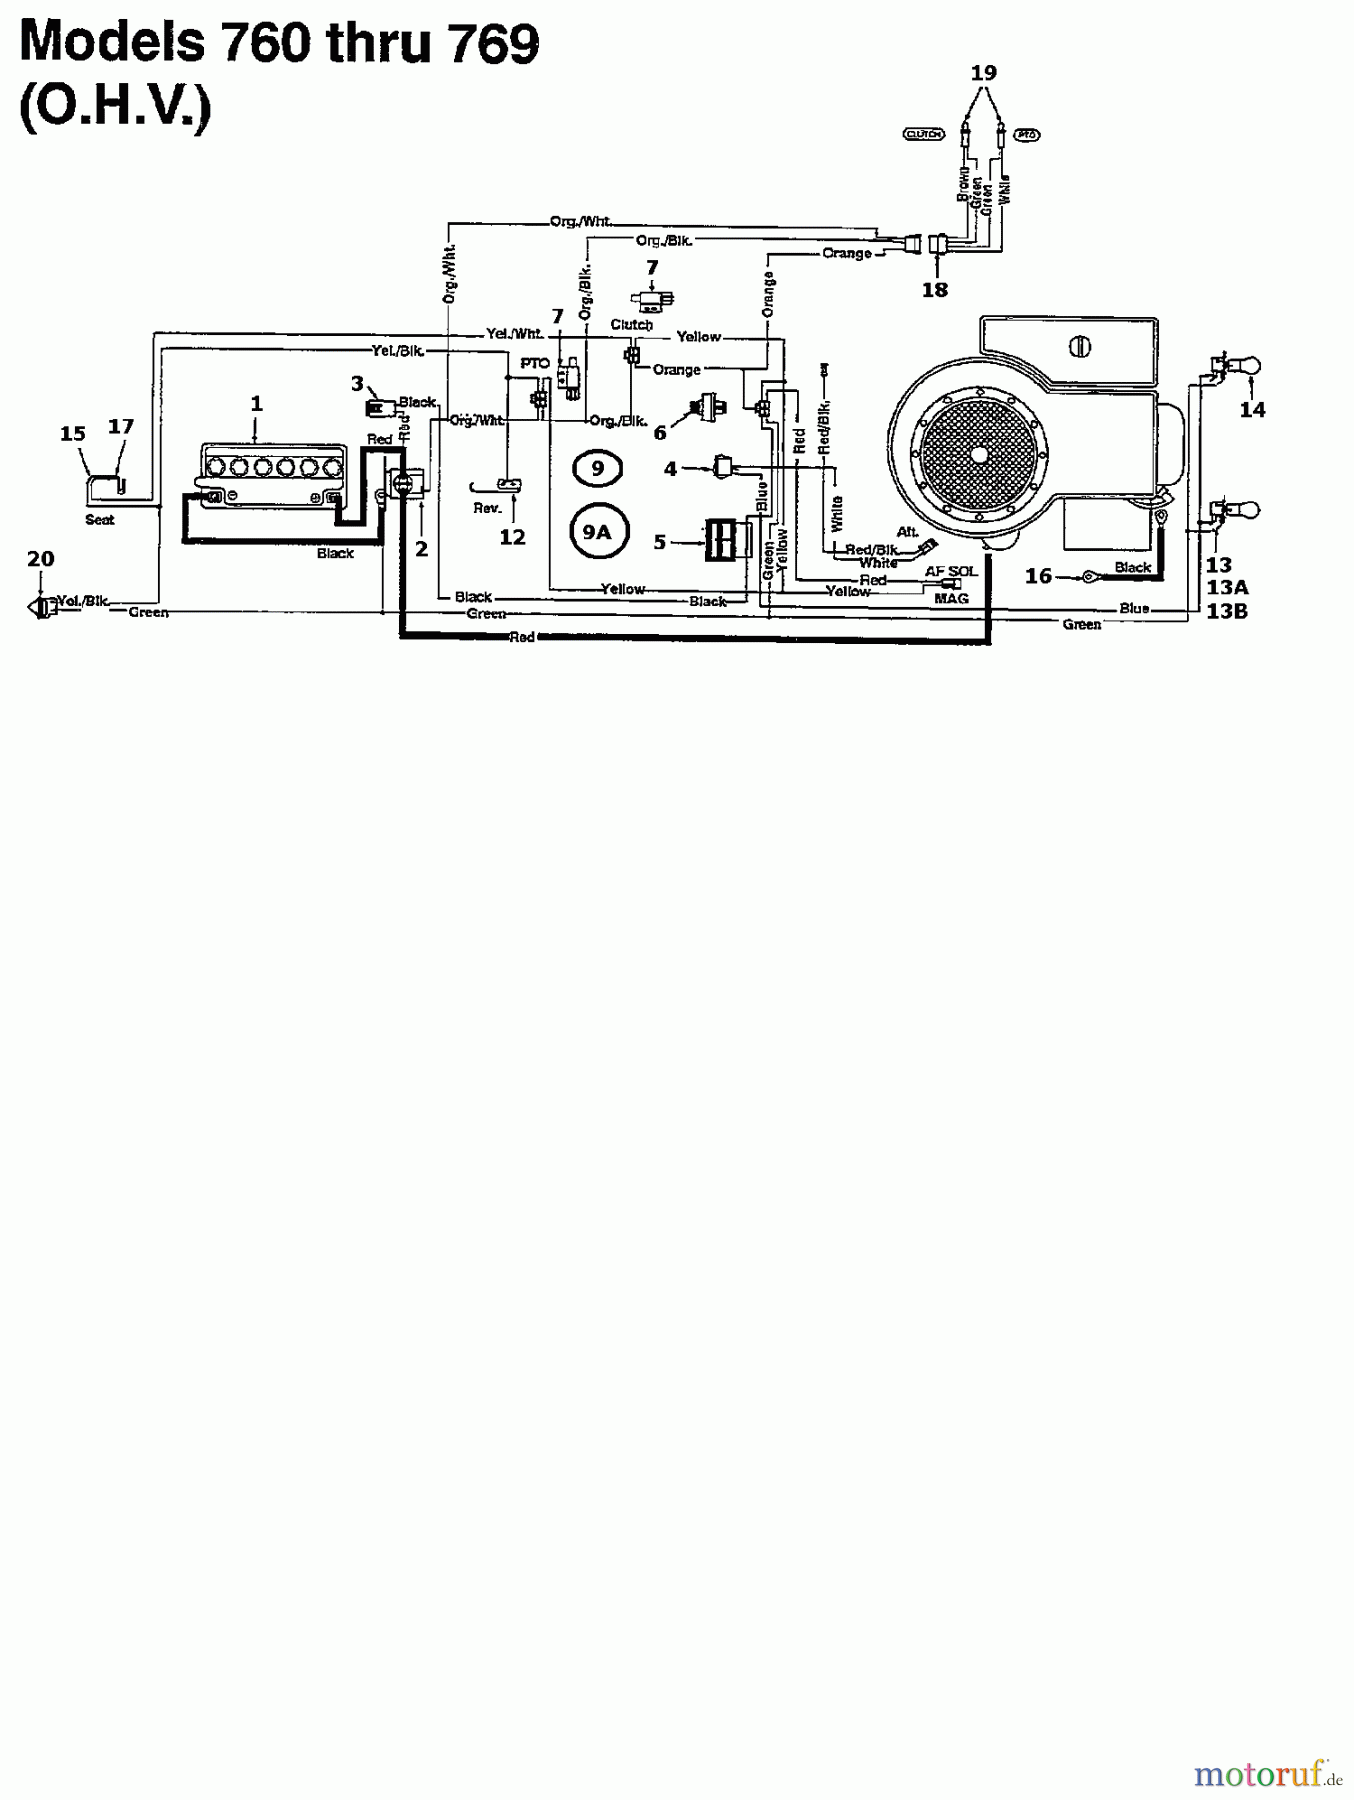  Motec Tracteurs de pelouse GT 160 RD 135T764N632  (1995) Plan electrique pour O.H.V.